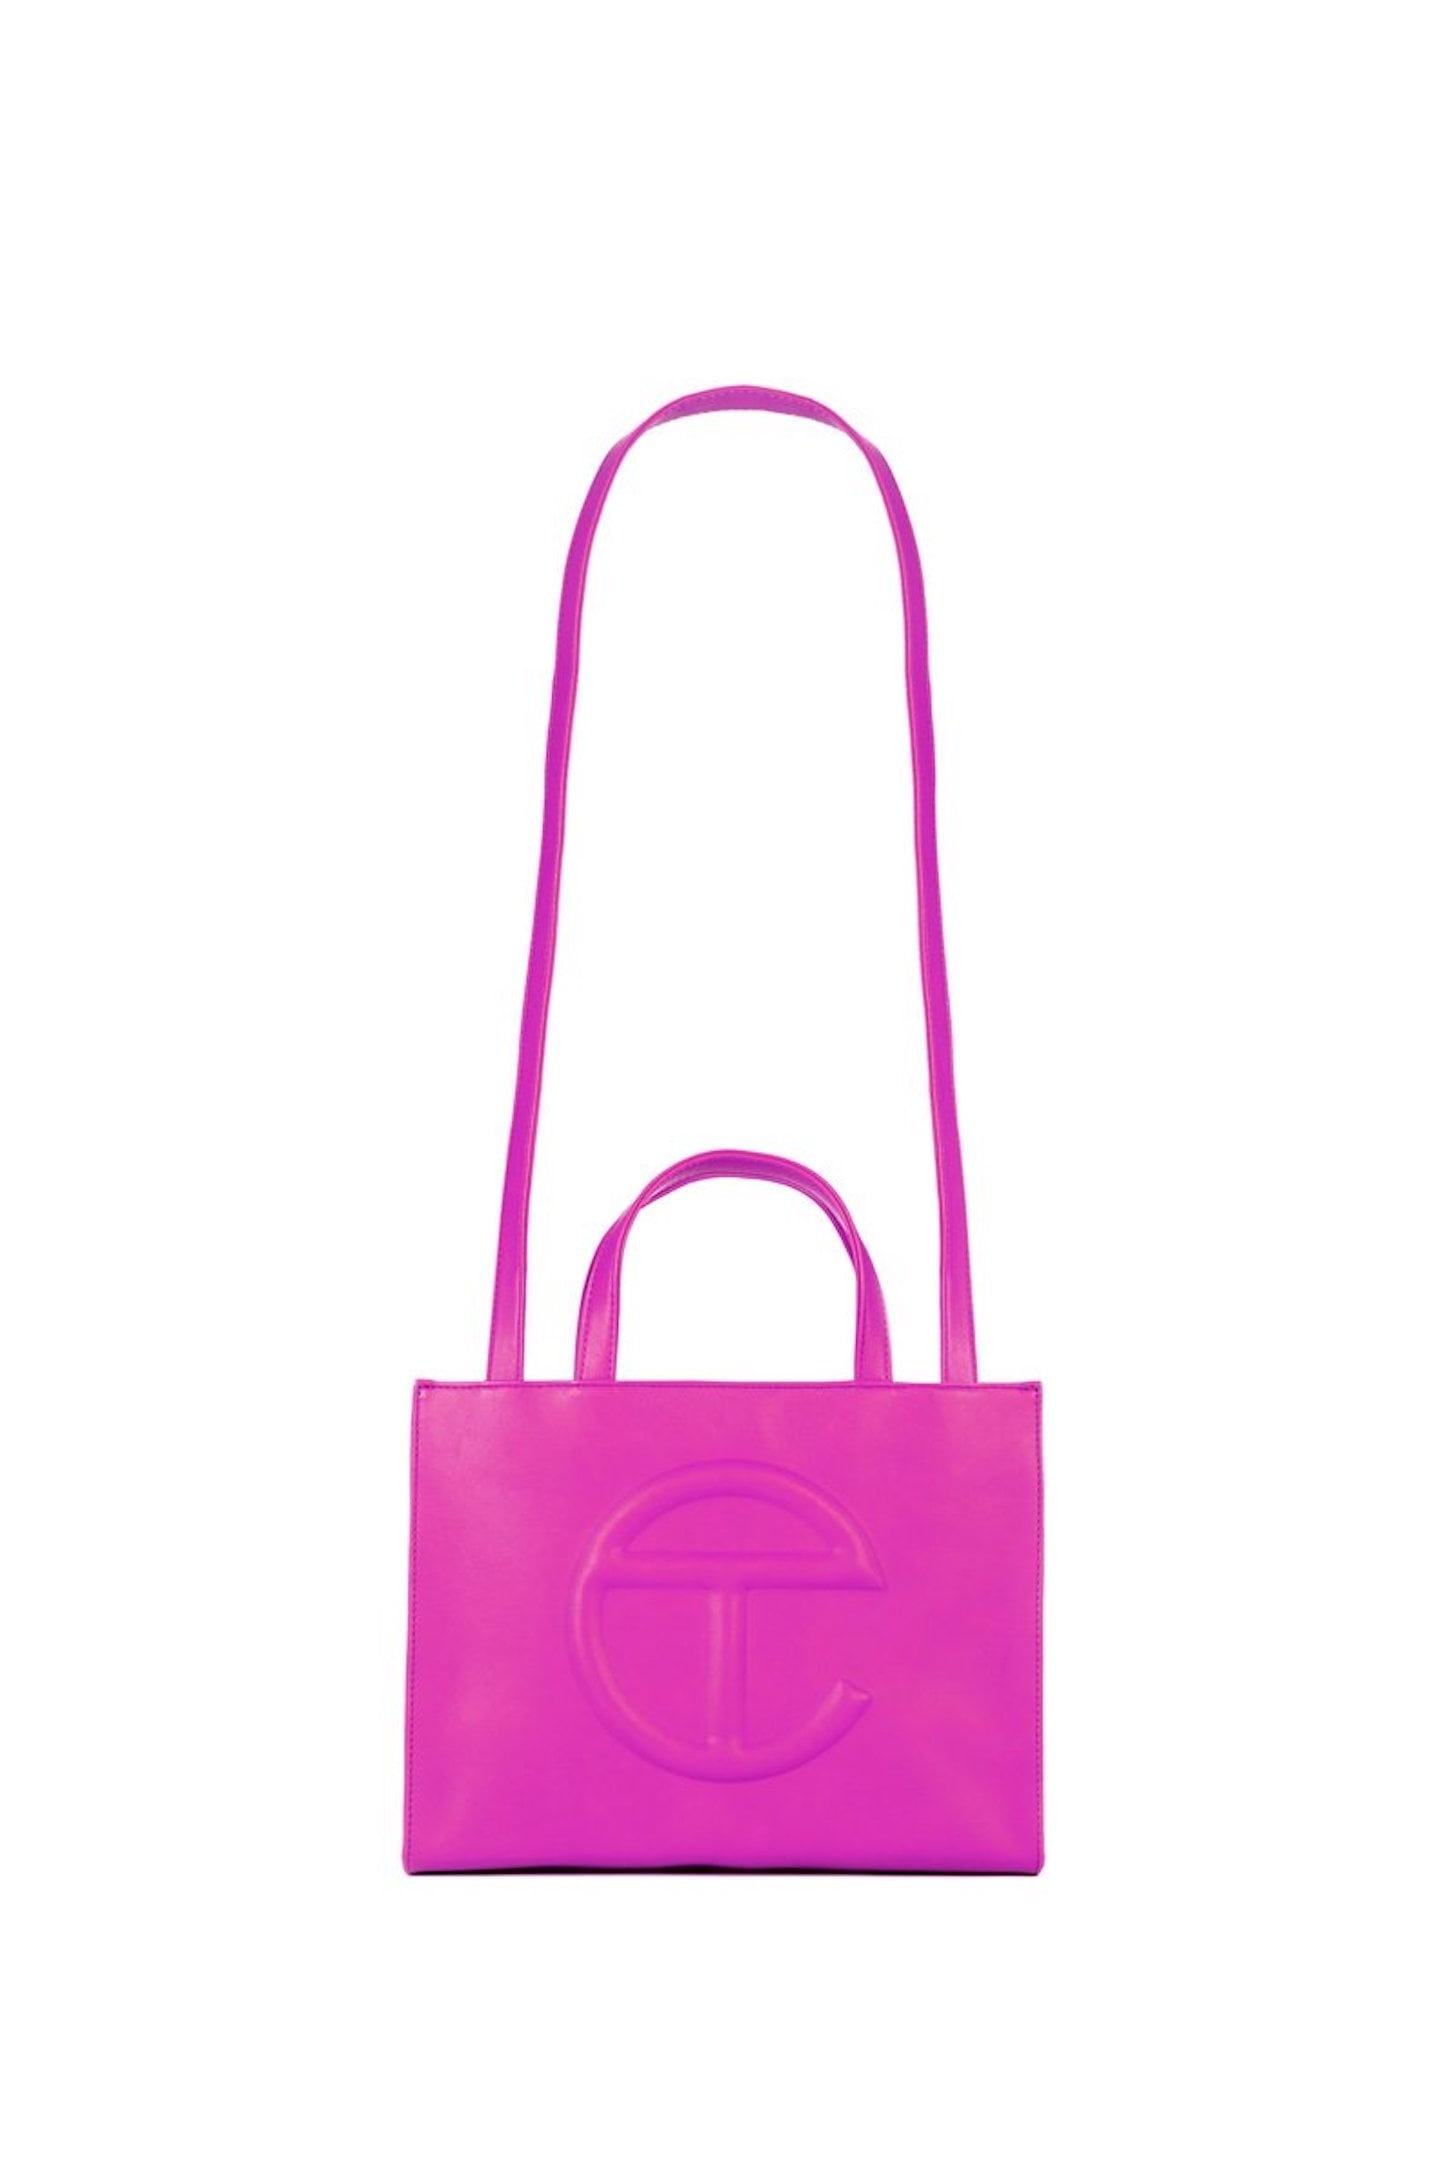 UGG x Telfar Collaboration Presale: Order Your Handbag While You